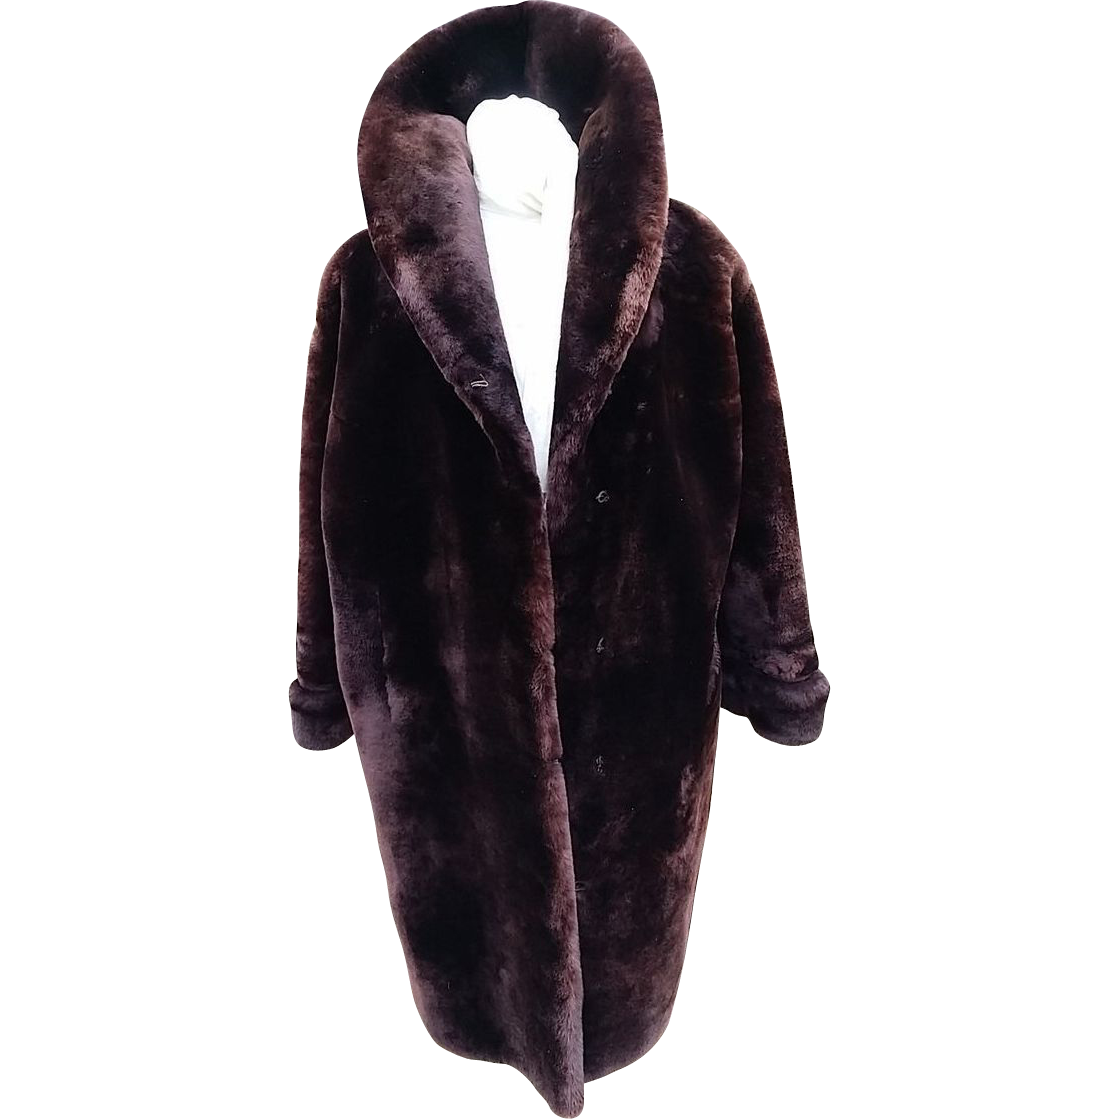 Download PNG image - Fur Coat PNG Free Download 